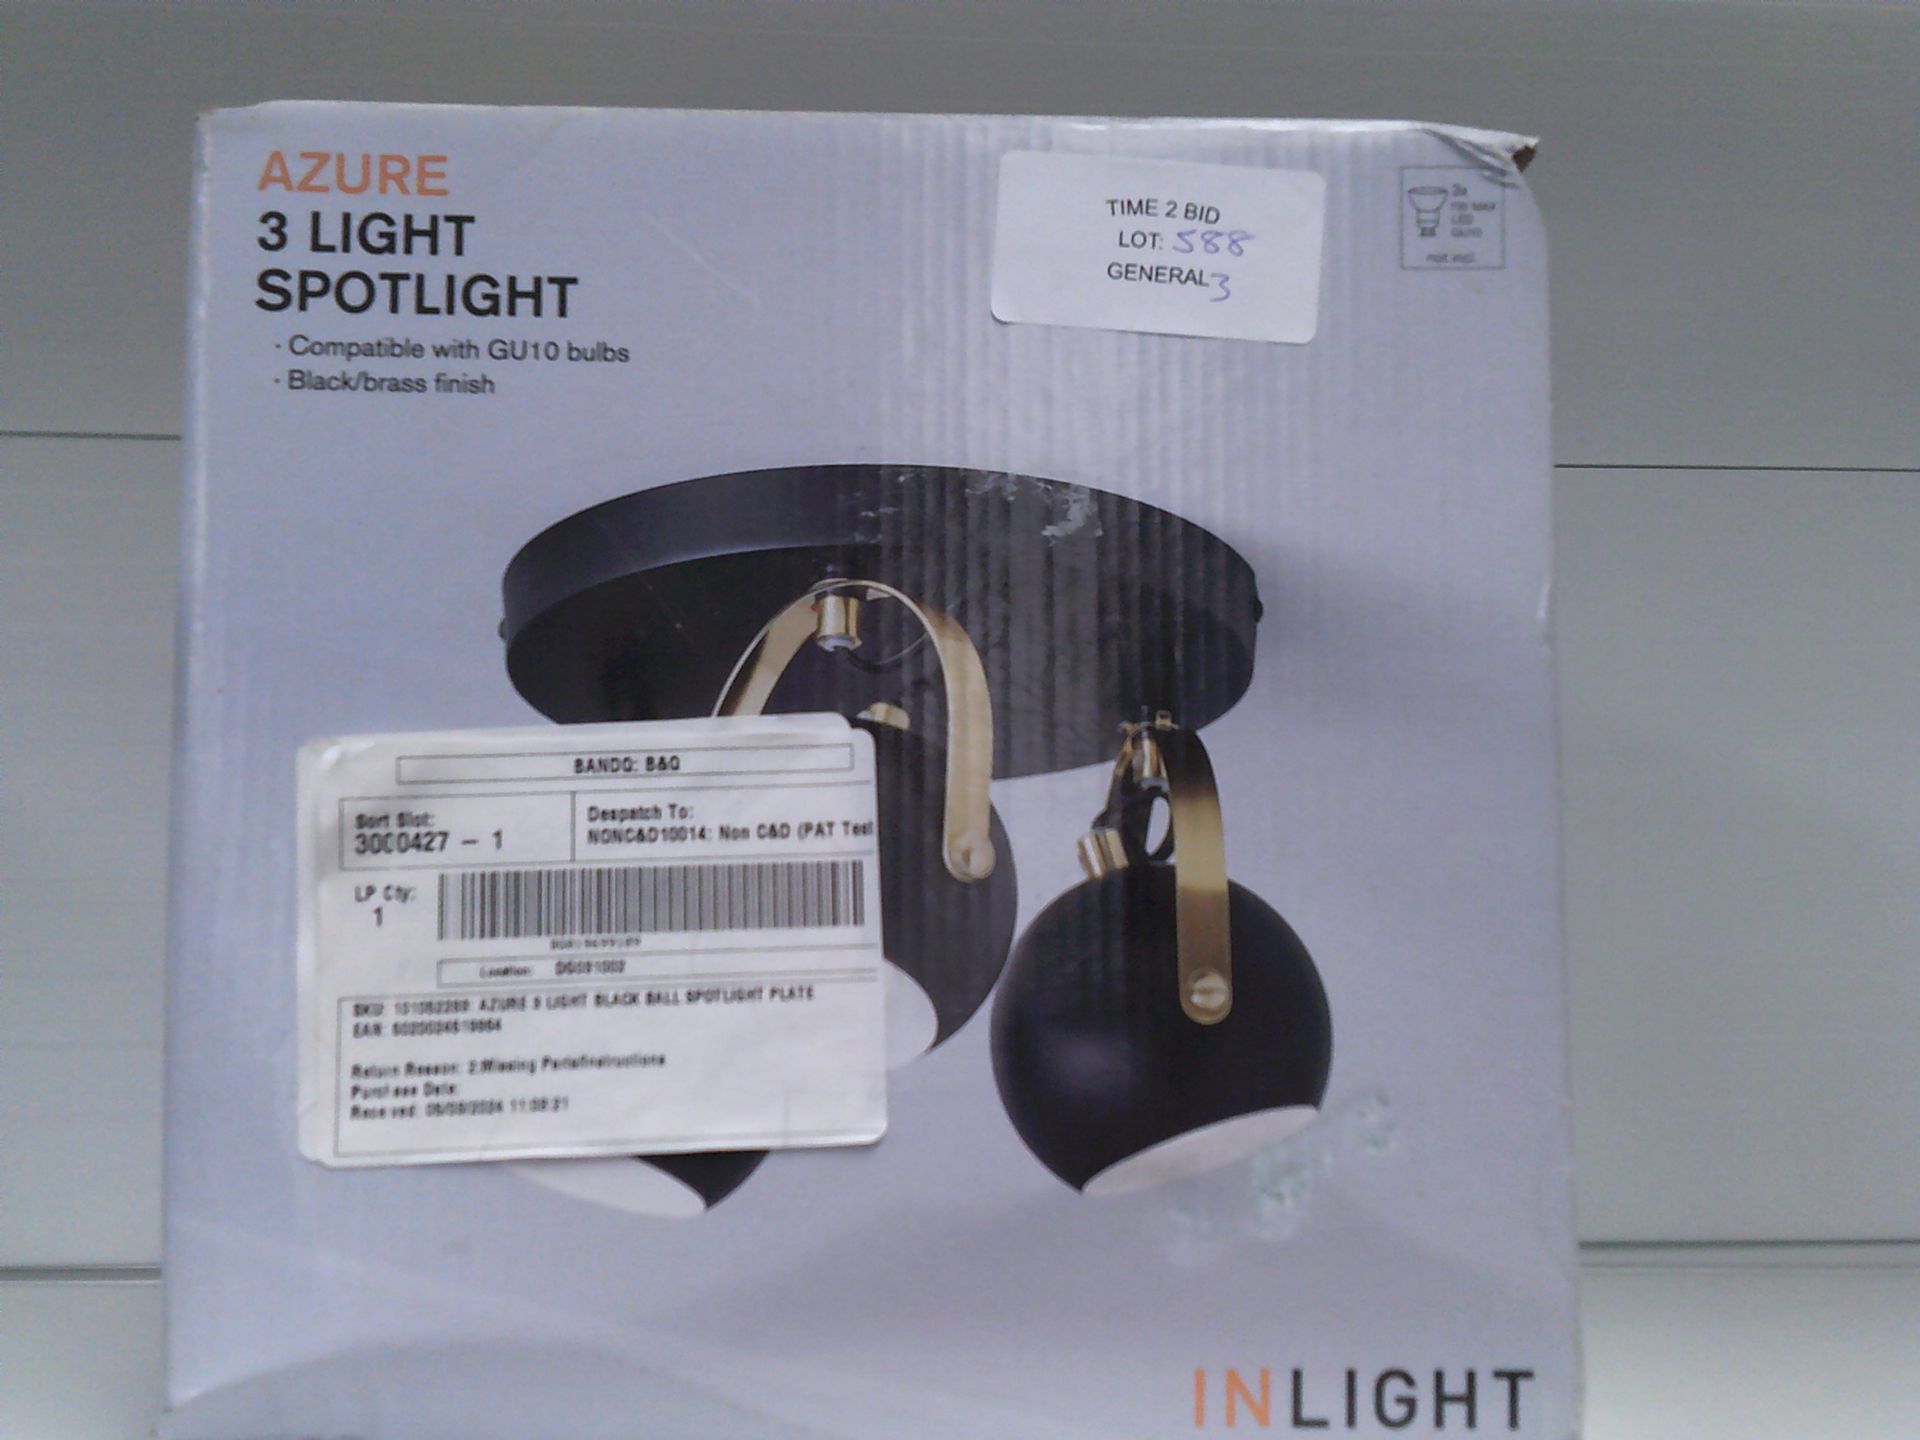 AZURE 3 LIGHT SPOTLIGHT BLACK/BRASS